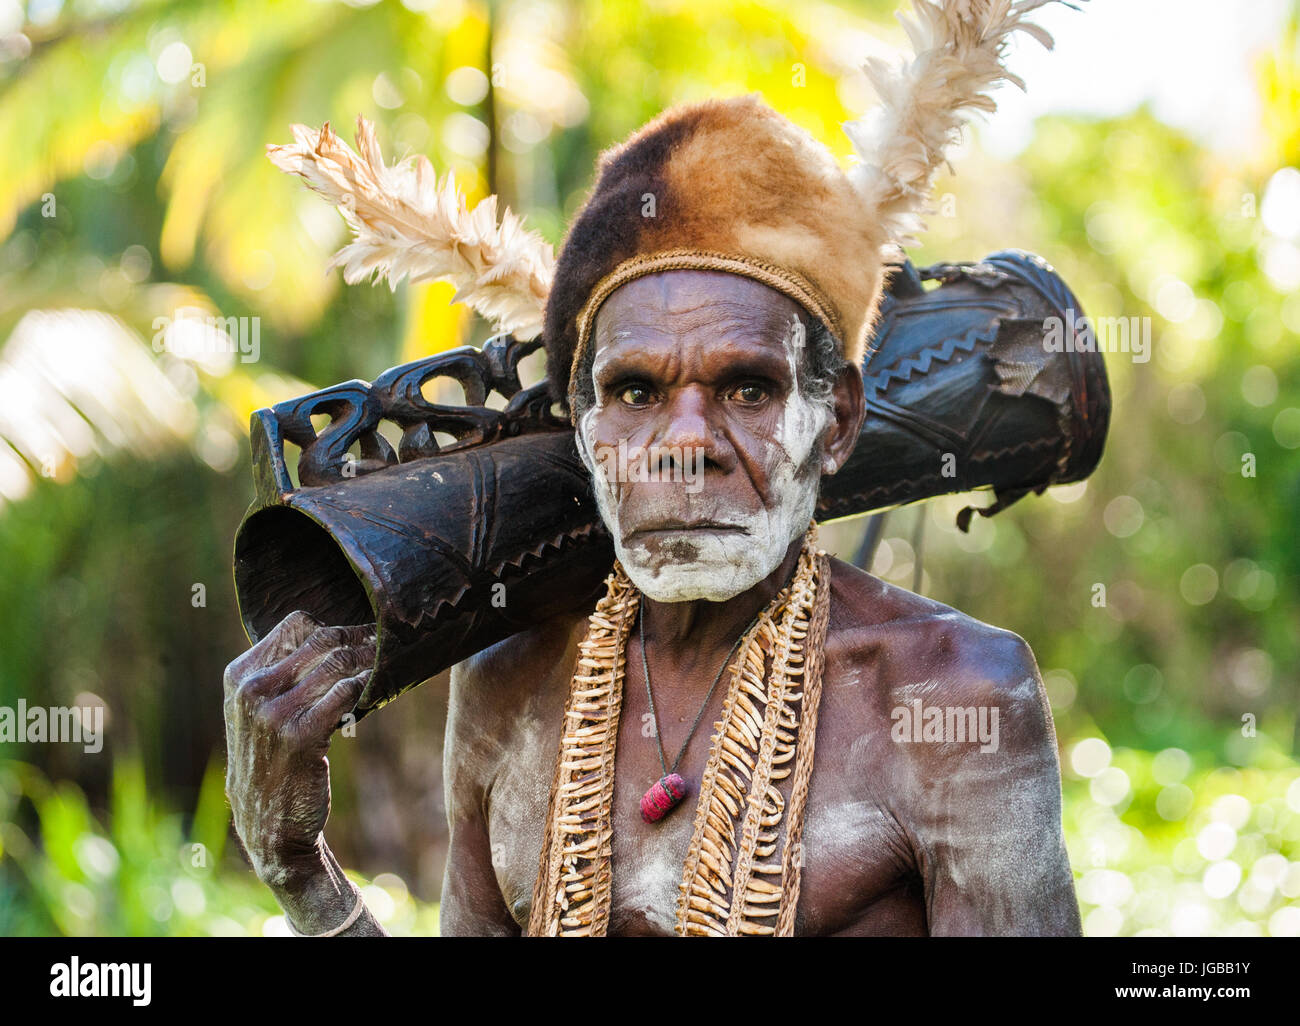 Indonesien, IRIAN JAYA, ASMAT Provinz, JOW Dorf - Juni 12: Porträt eines Kriegers Asmat-Stammes mit einer Schamanentrommel. Stockfoto